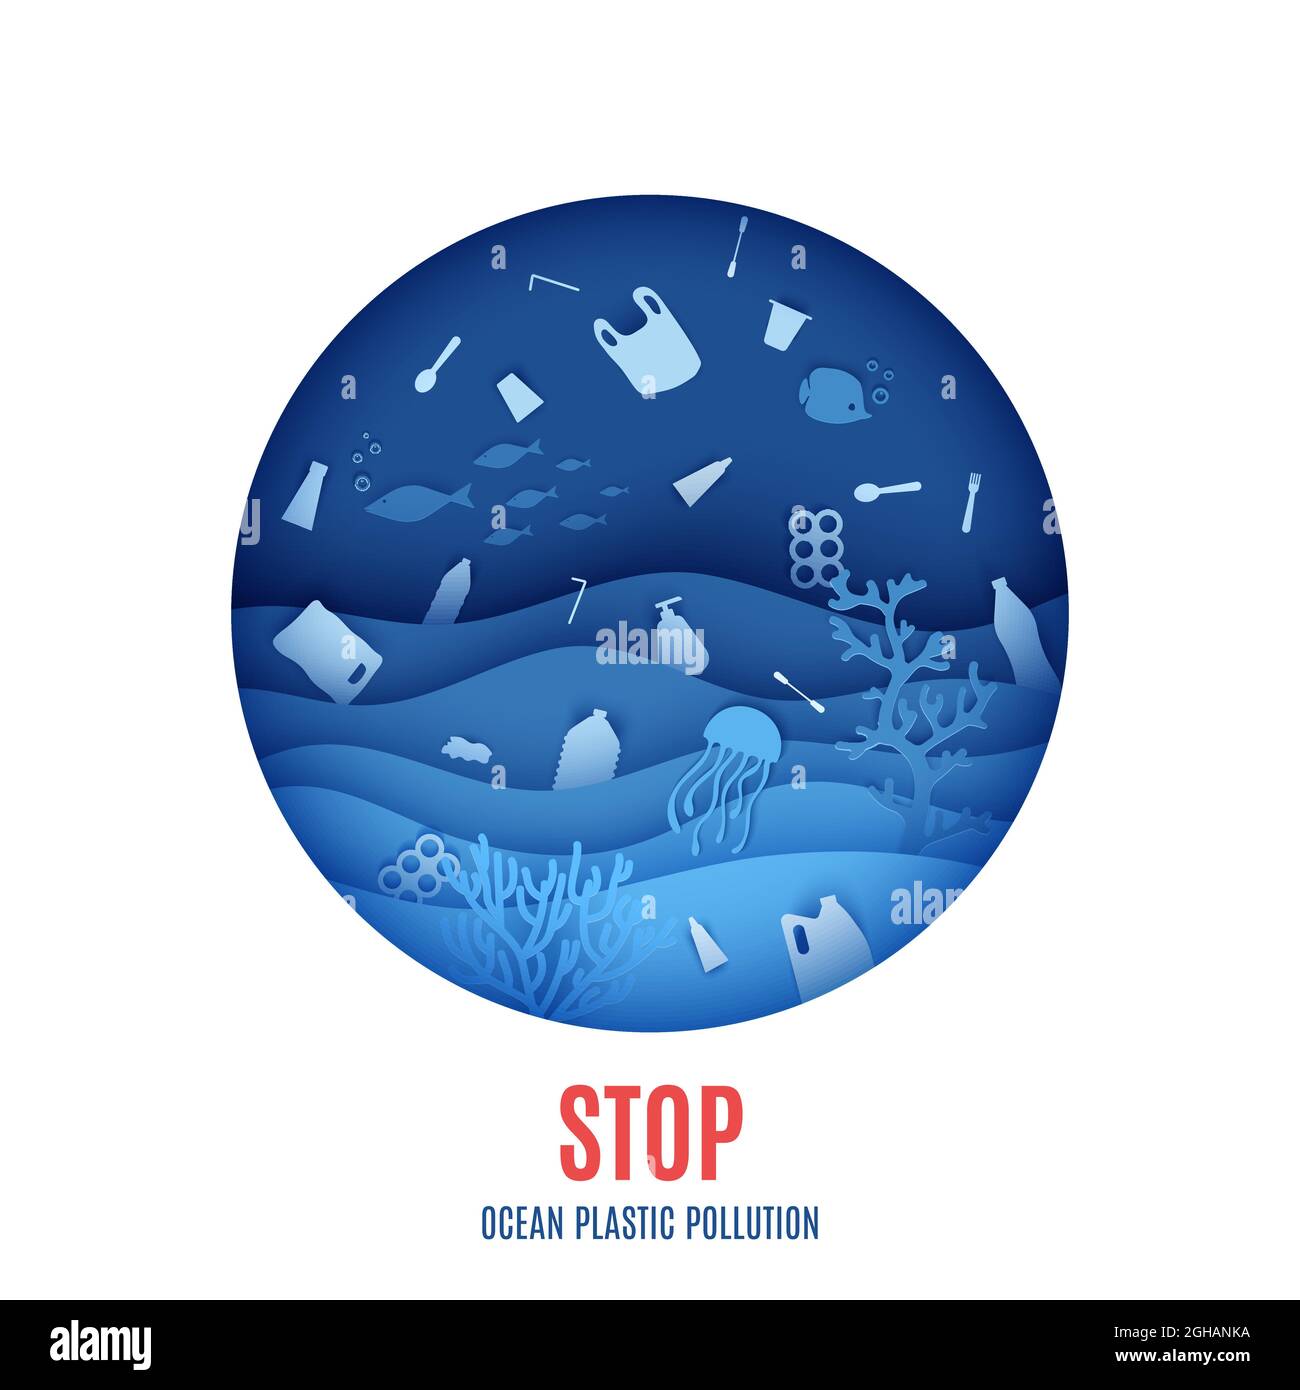 Weltmeertag, stoppt Plastikverschmutzung durch den Ozean. Blick auf die Unterwasserwelt durch das Bullauge eines U-Bootes in Papierform. Vektor Stock Vektor